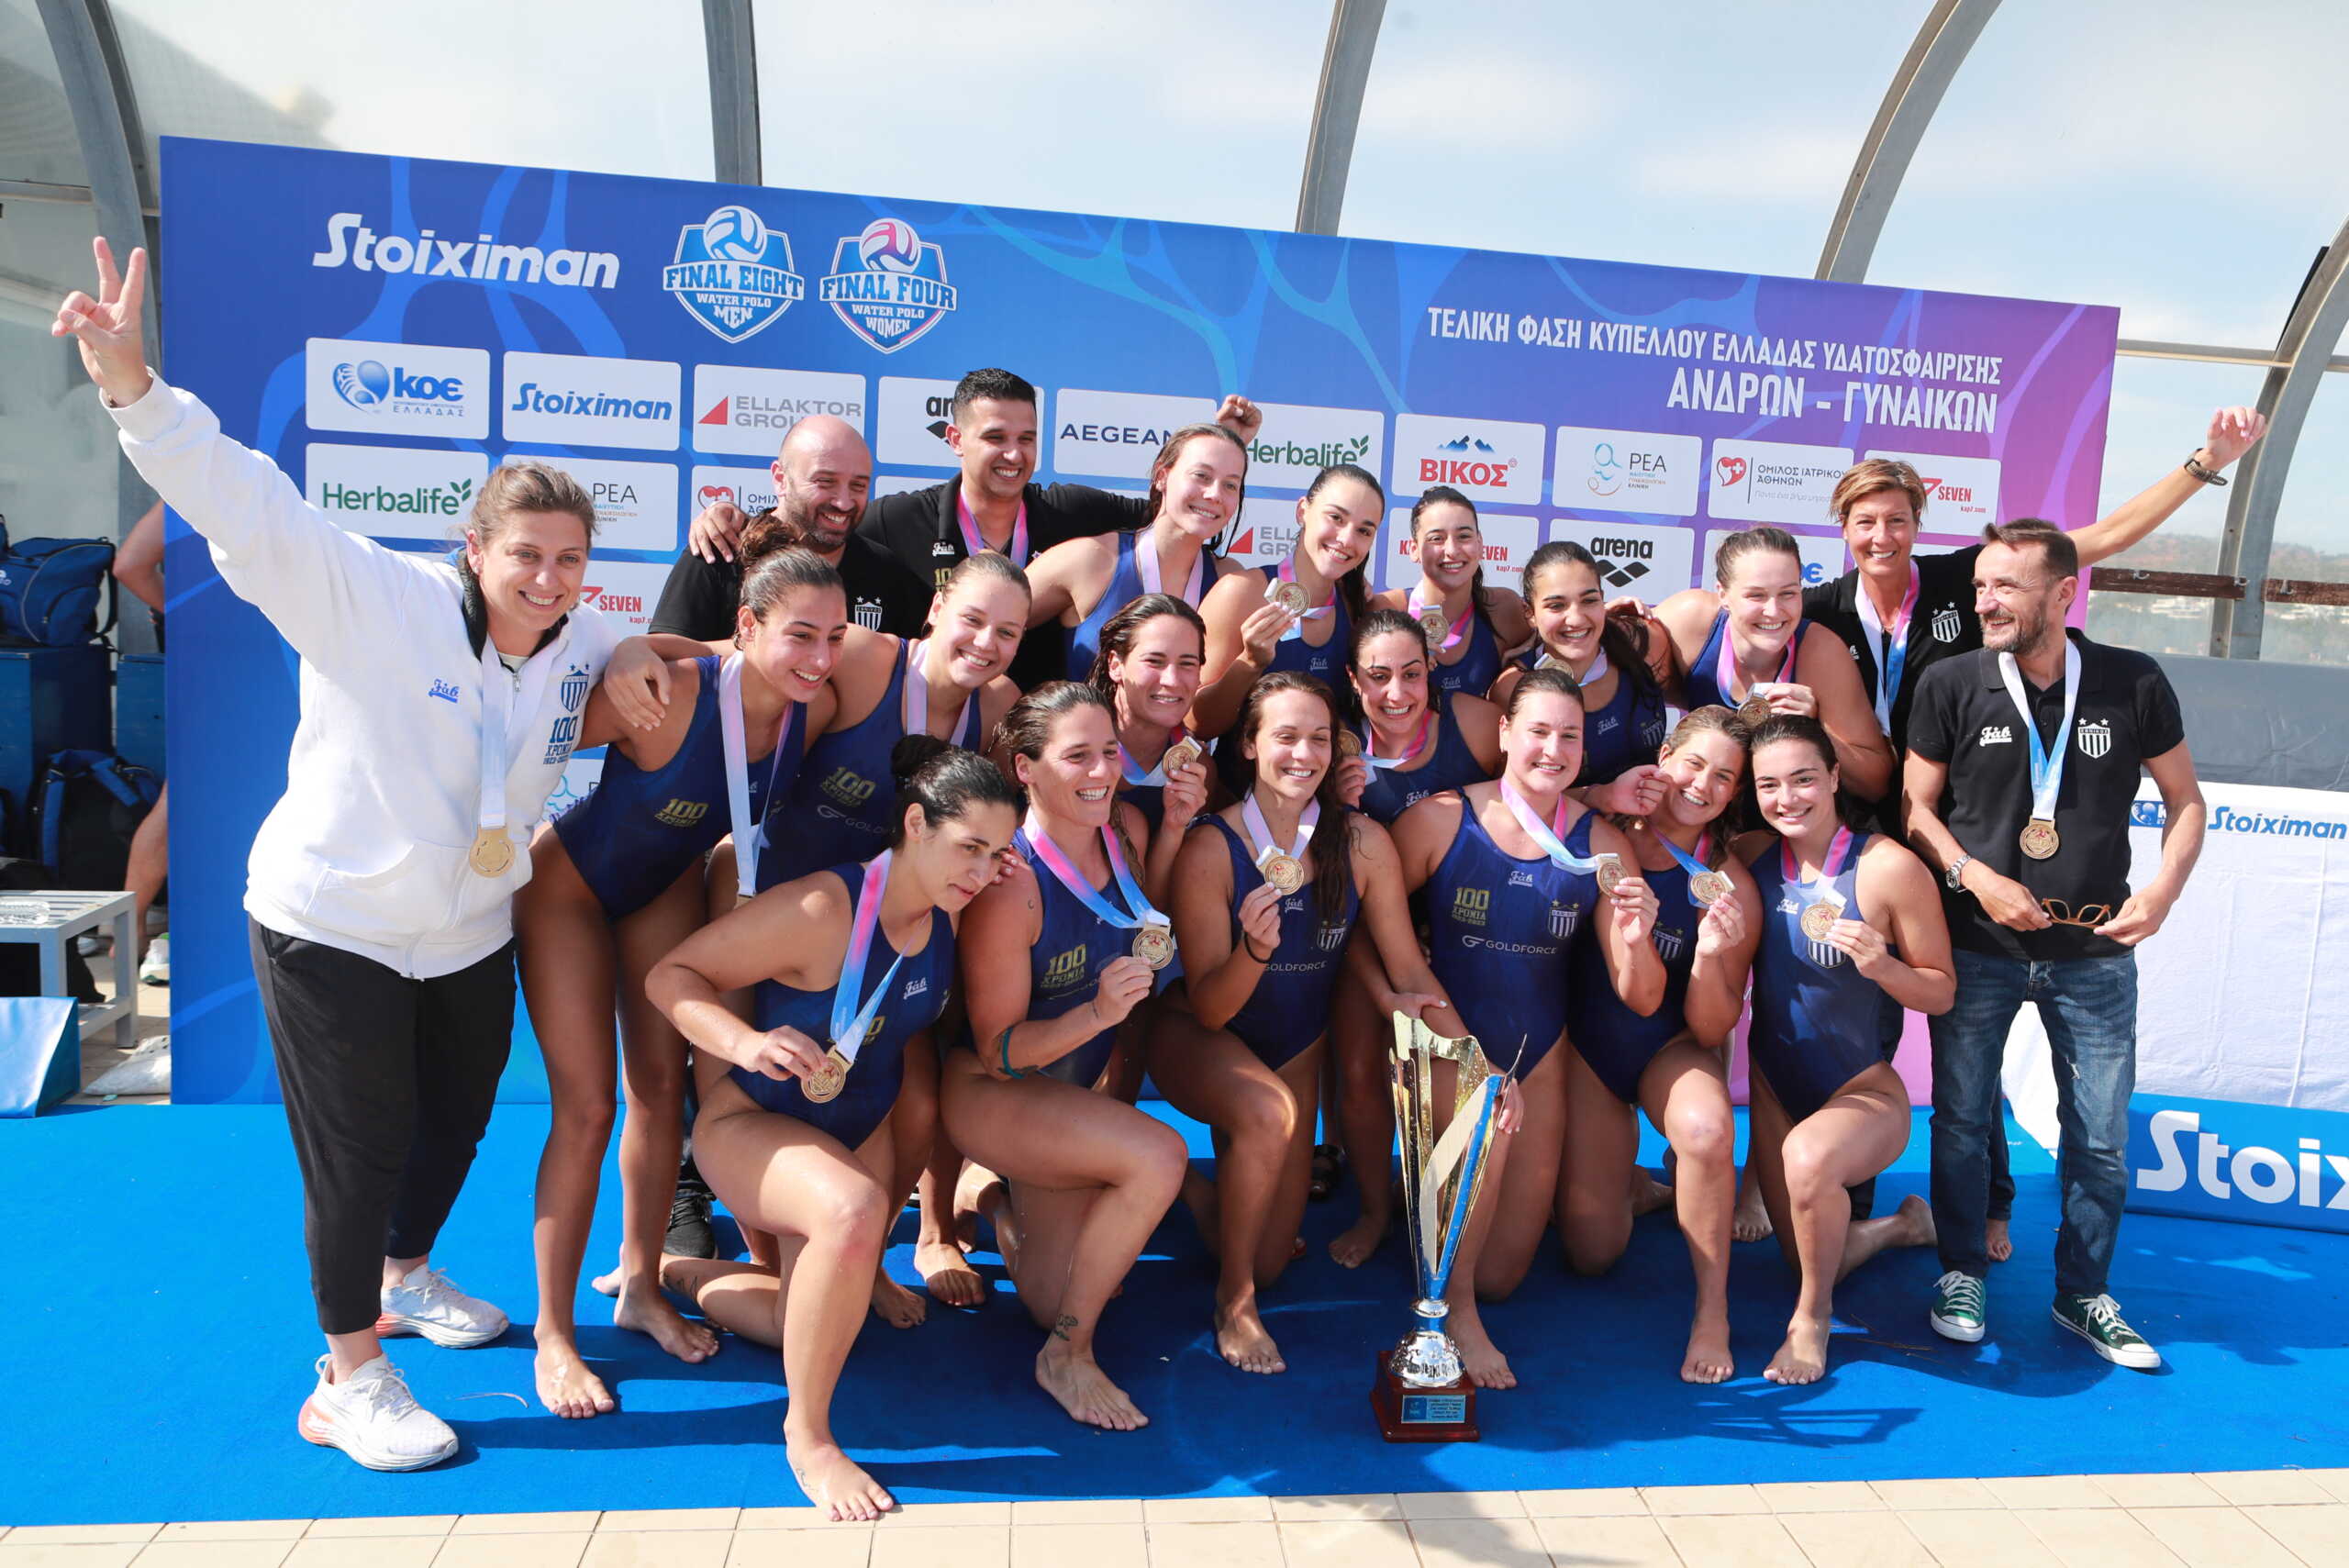 Ολυμπιακός – Εθνικός 11-13: Έκαναν την έκπληξη και κατέκτησαν το Κύπελλο Ελλάδας στο πόλο γυναικών οι «κυανόλευκες»